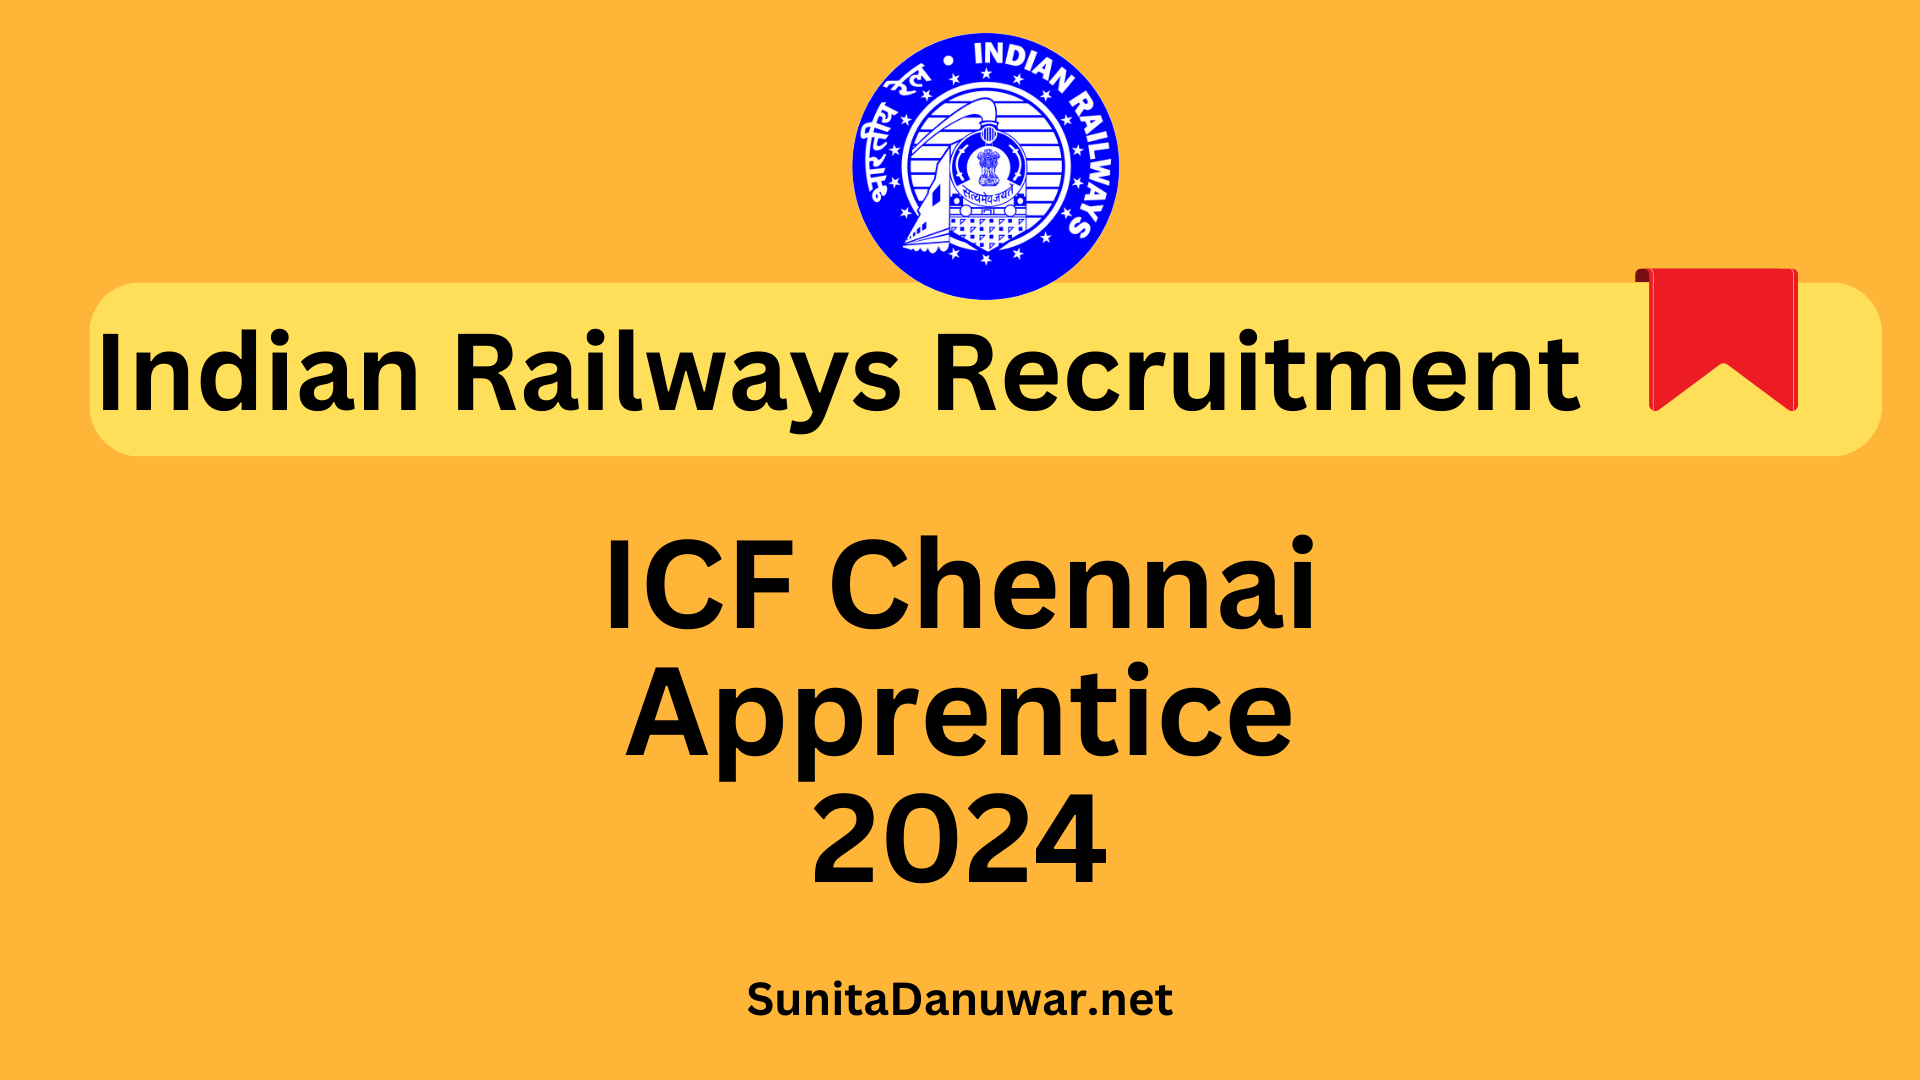 Indian Railways ICF Recruitment 2024